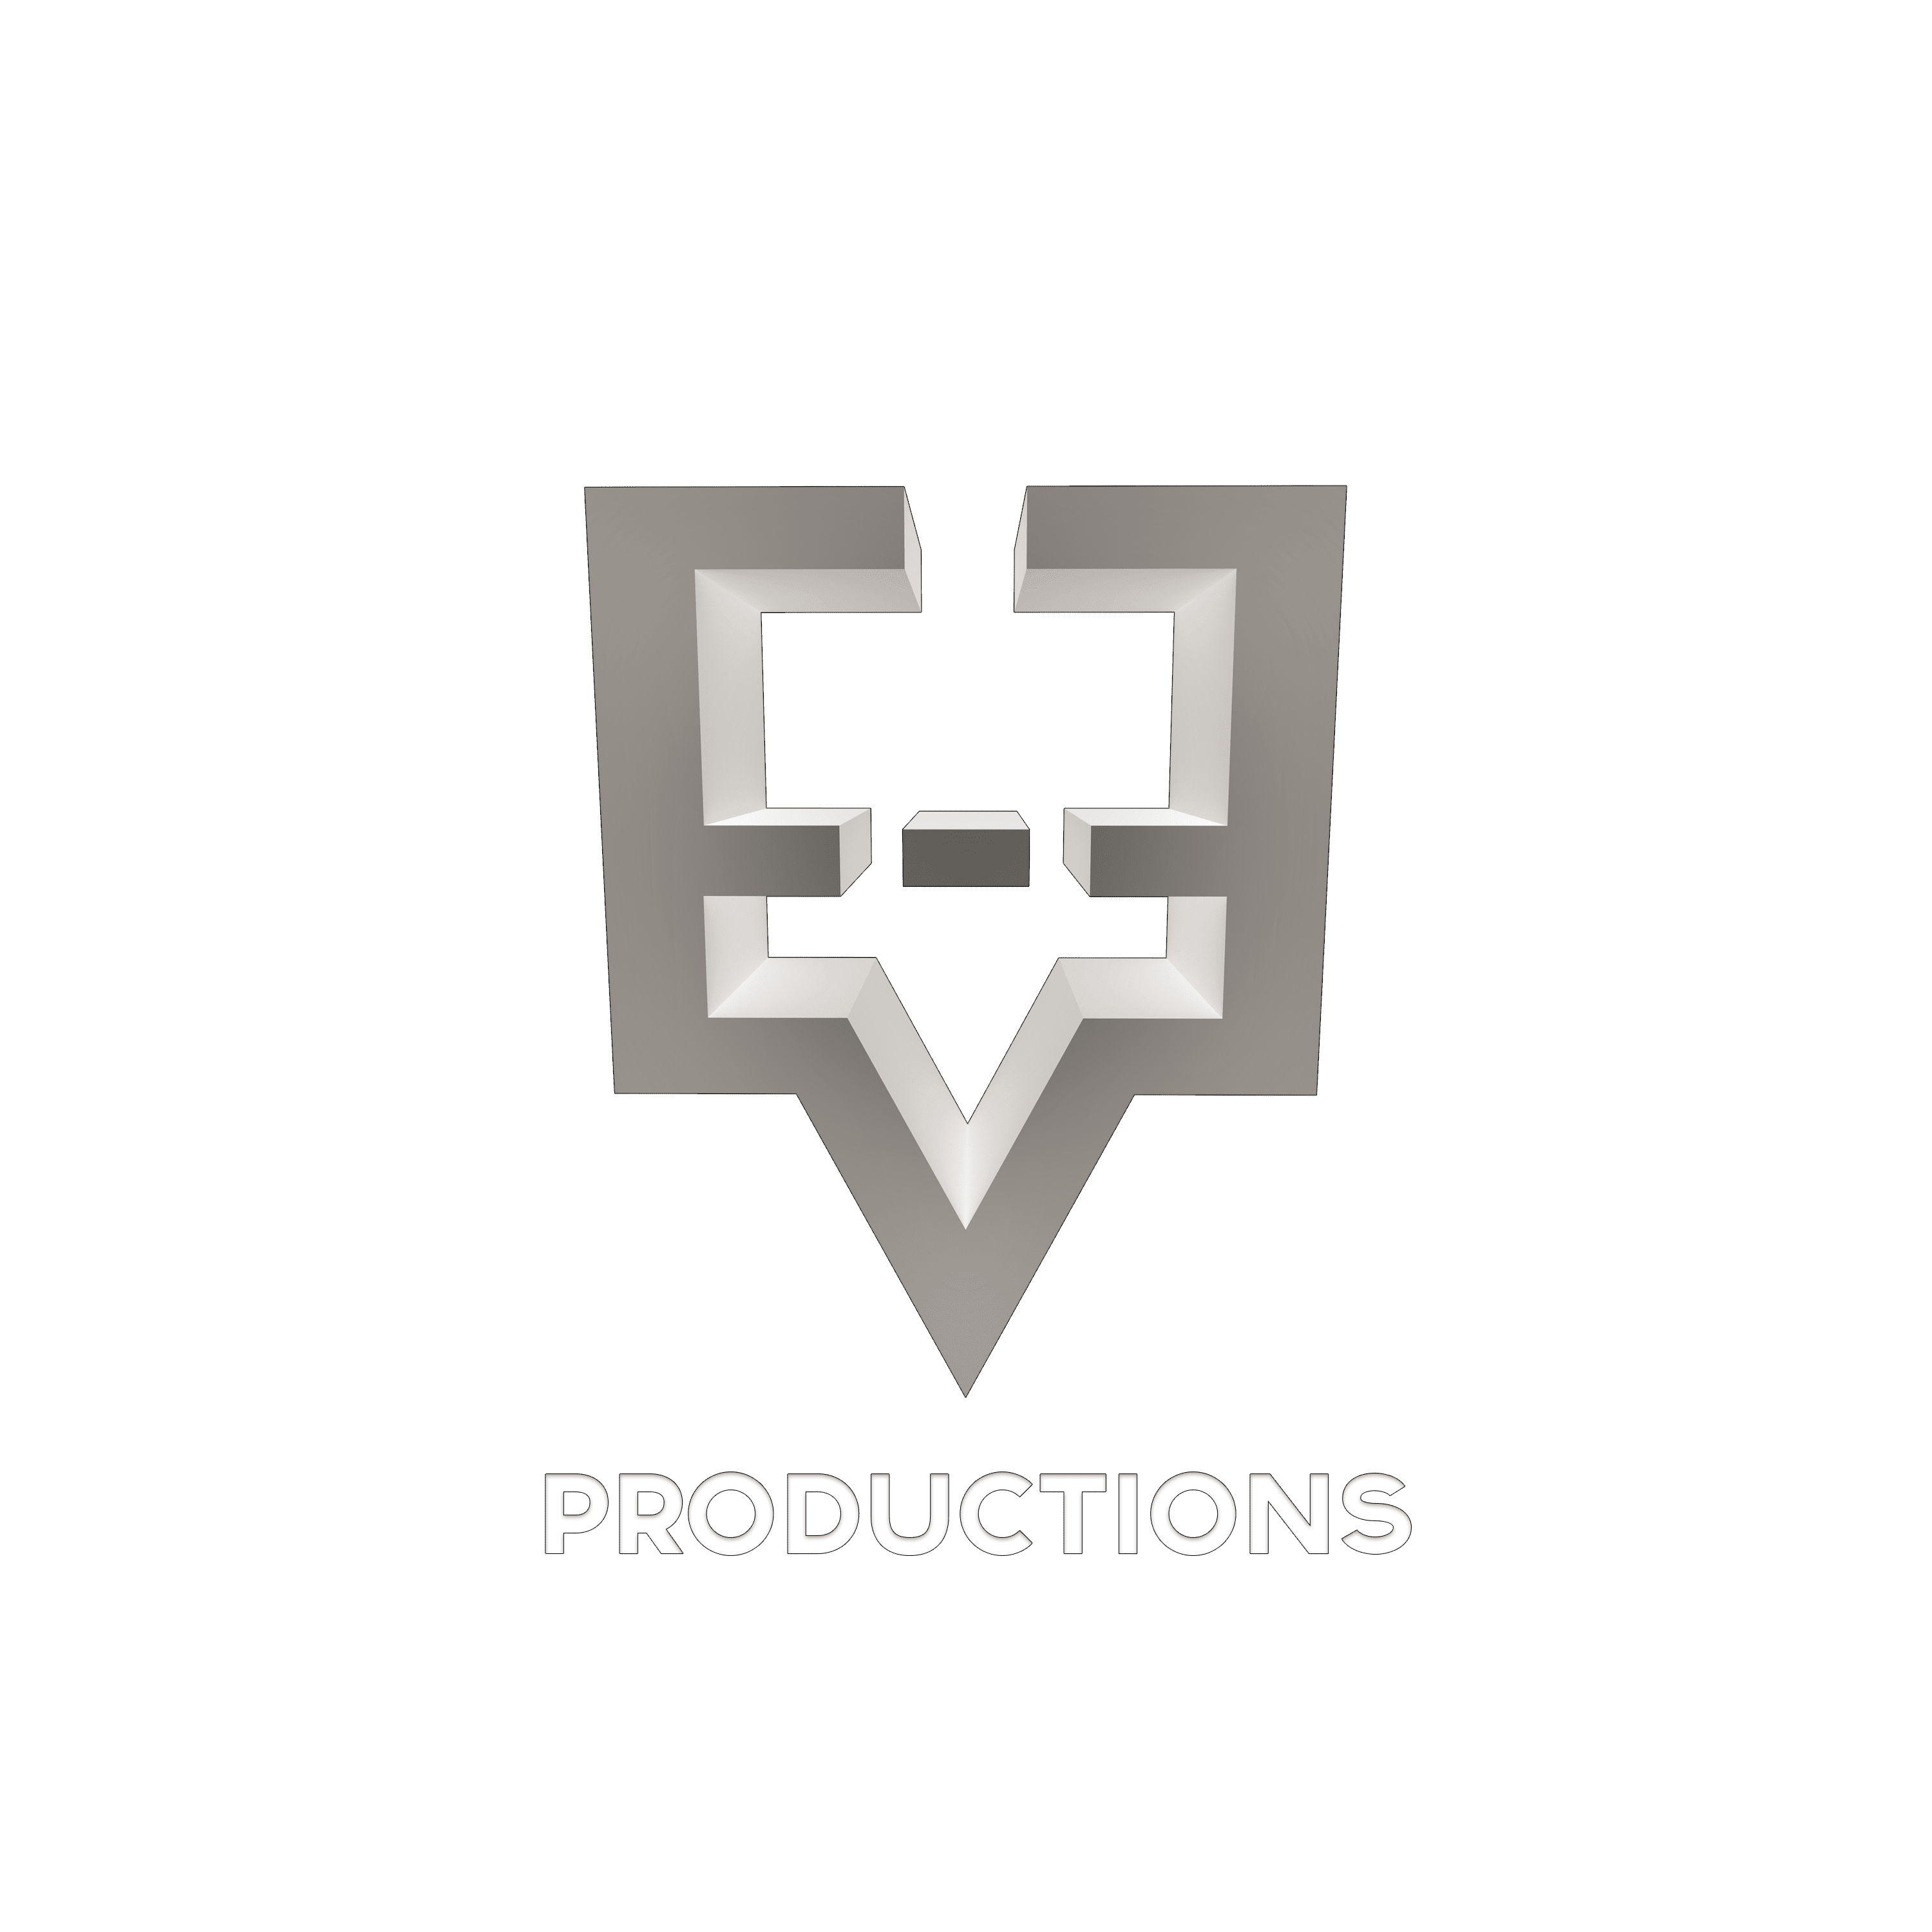 Ev-E Productions